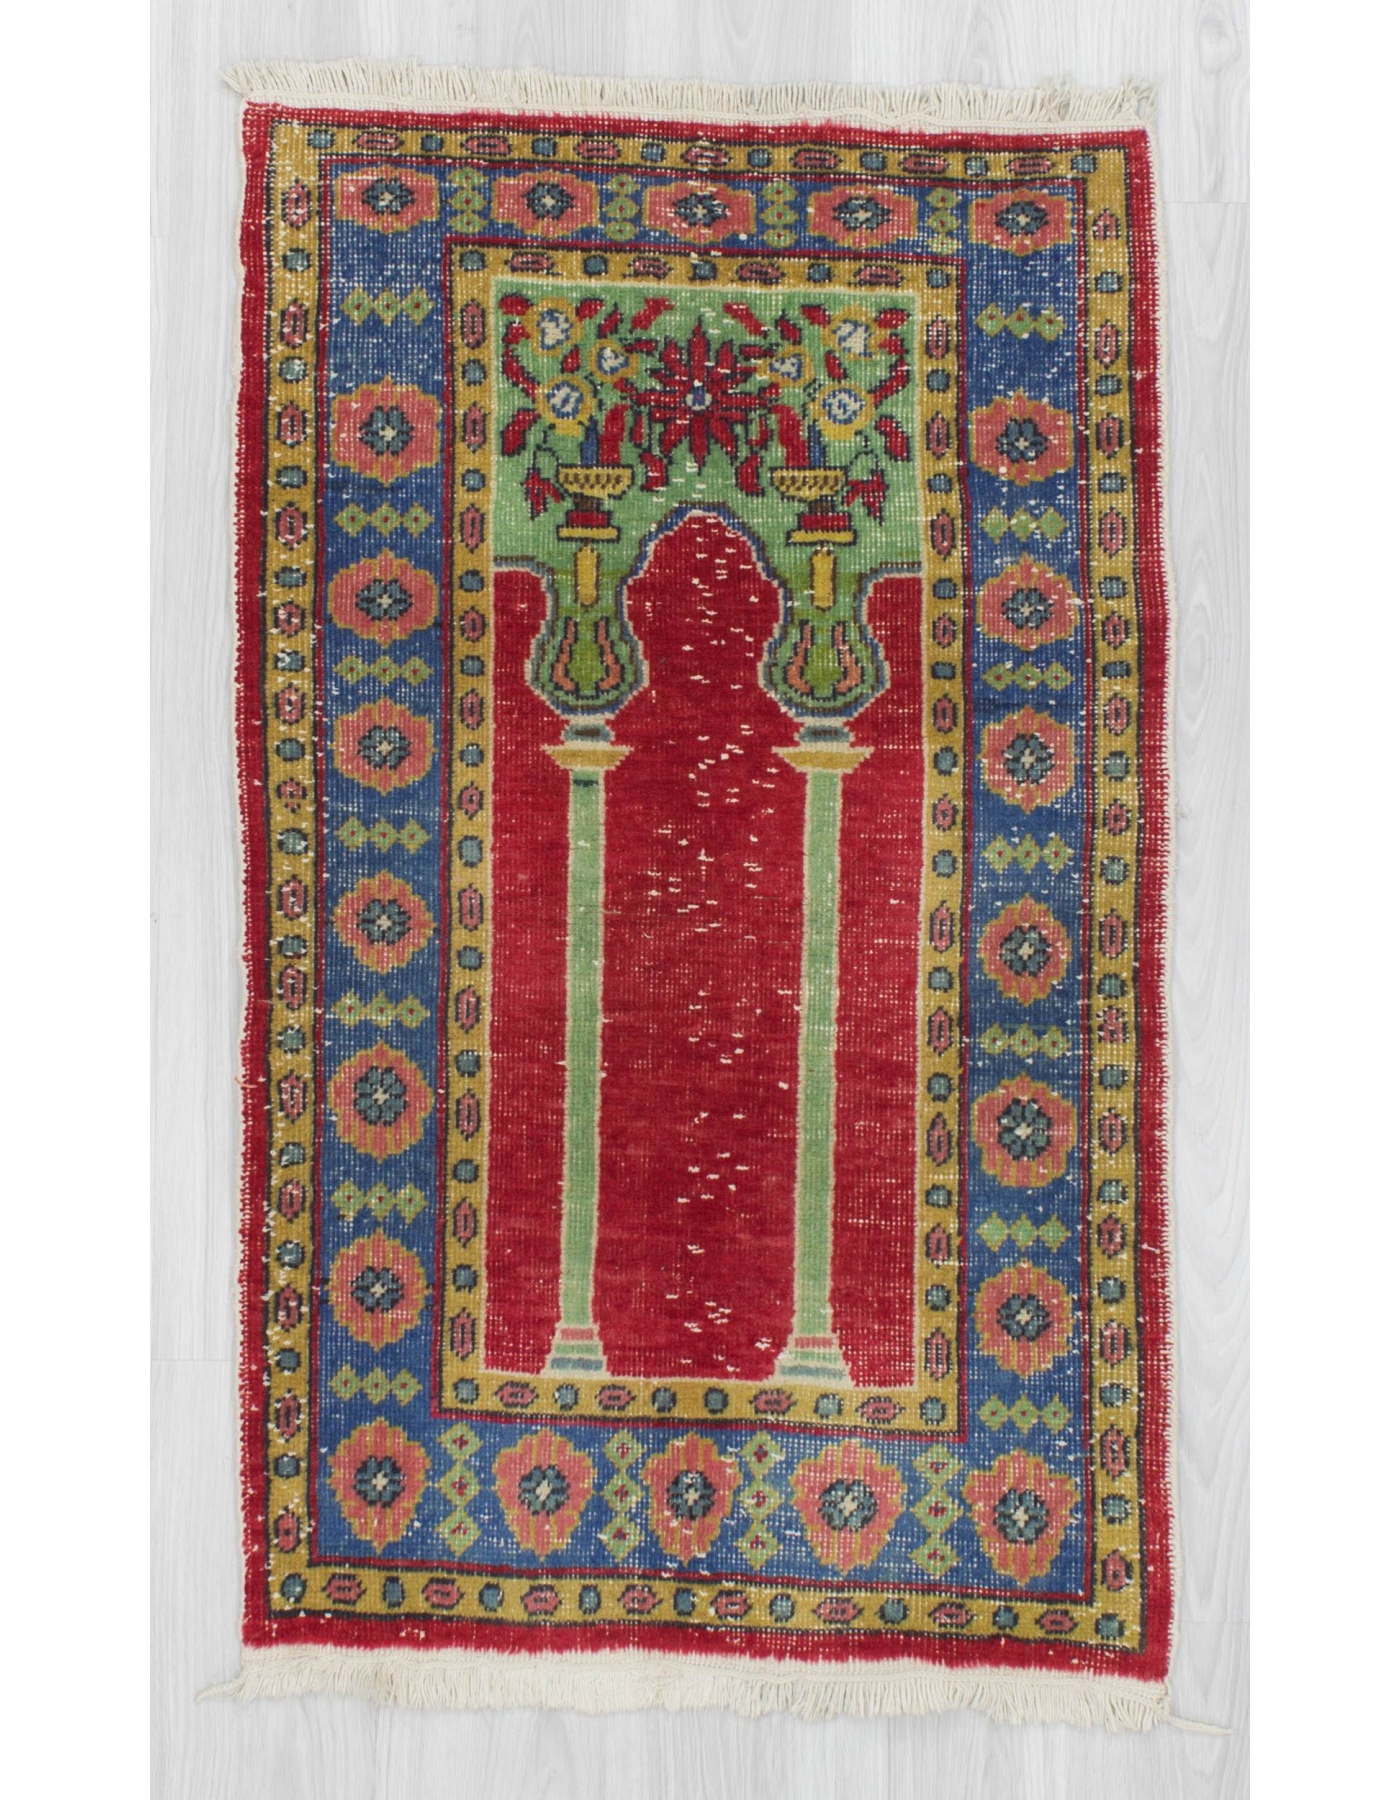 Vintage handknotted decorative Turkish prayer rug